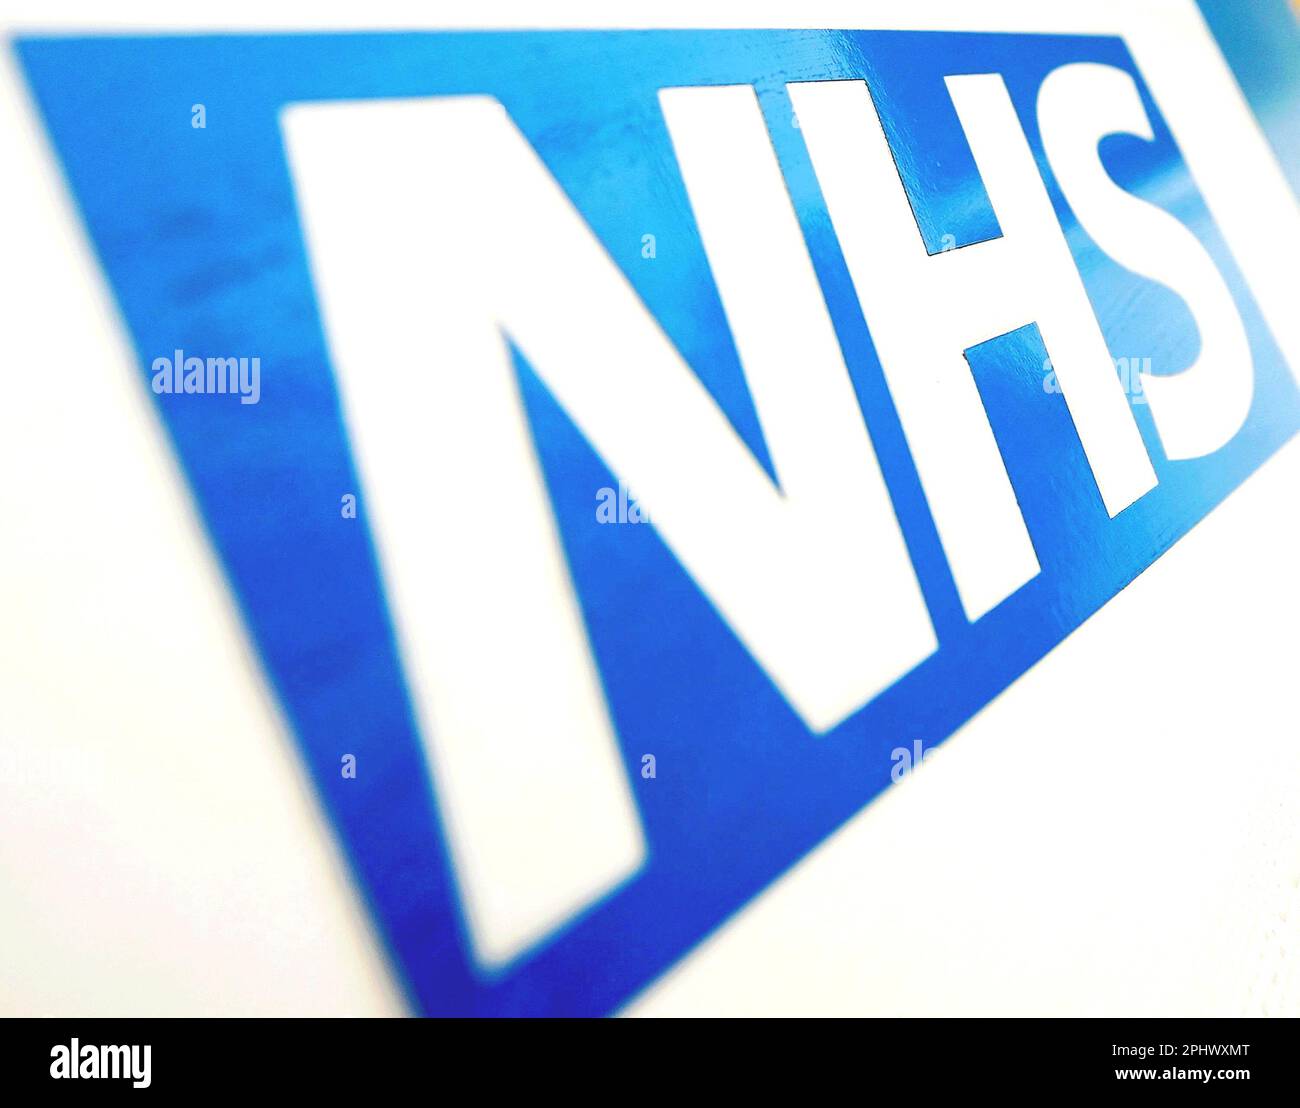 Photo du dossier datée du 06/11/10 du logo NHS, comme les patients rénaux ne reçoivent pas de fonds auxquels ils ont droit pour aider au coût de l'exécution des traitements à la maison, a déclaré un organisme de bienfaisance. Banque D'Images